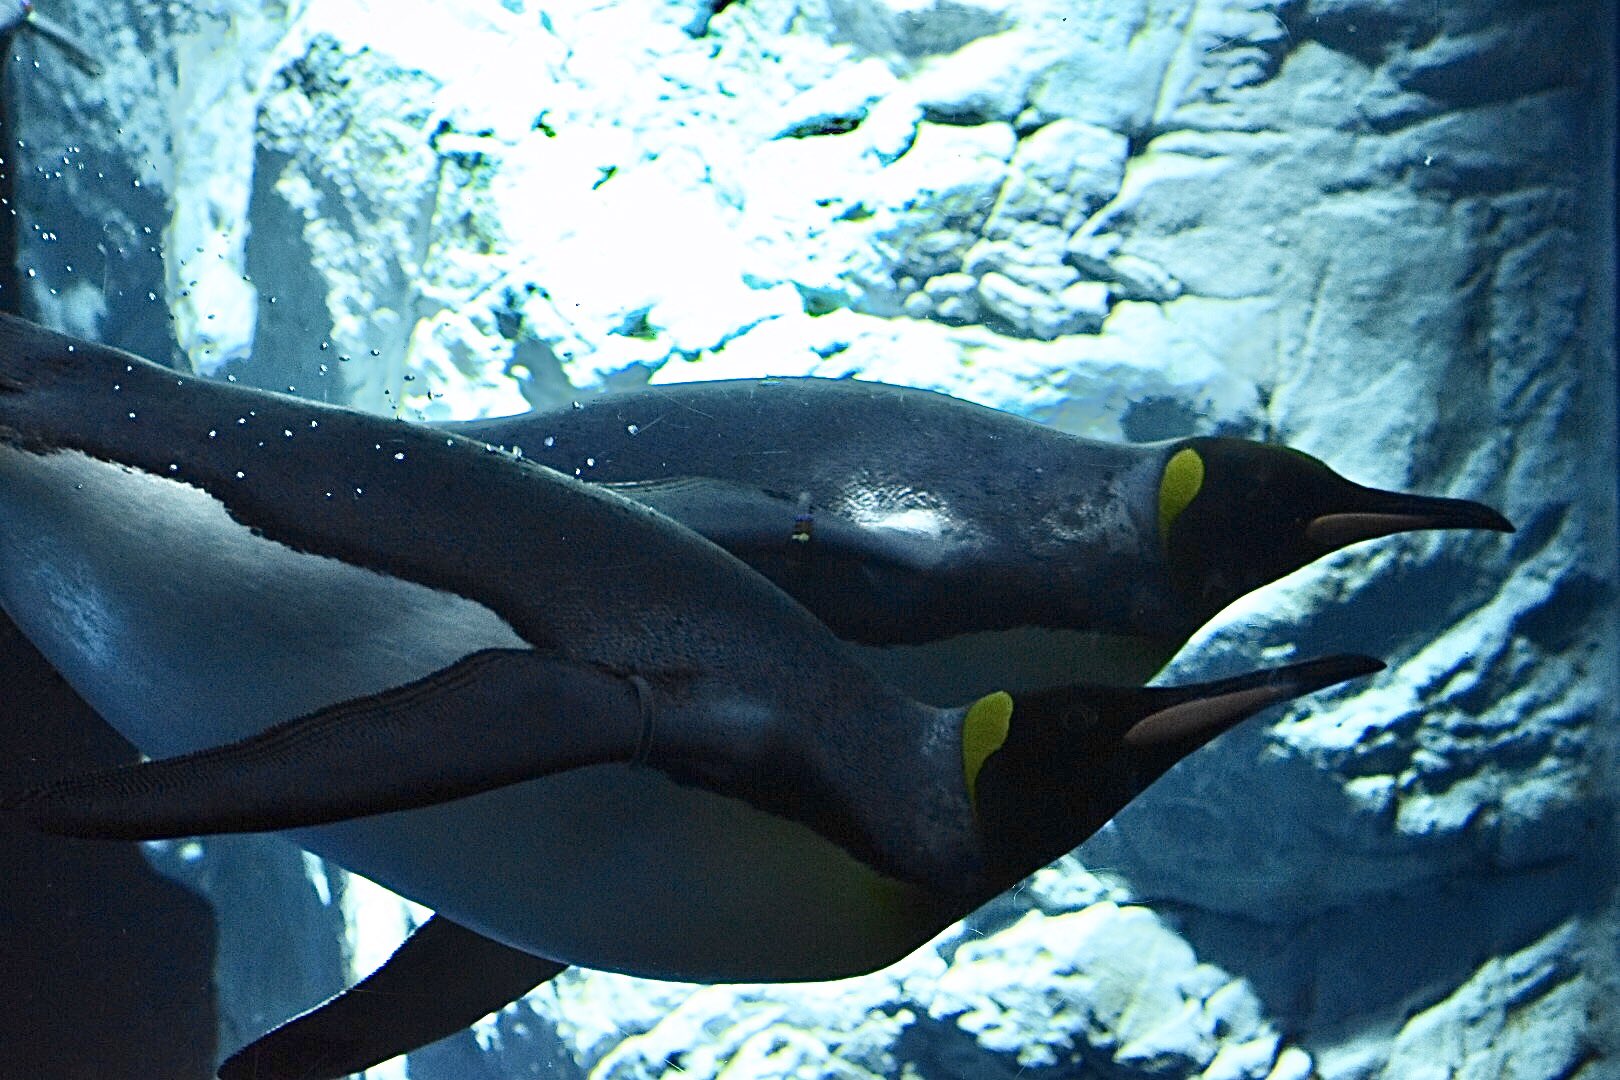 あみ 力強く泳ぐ姿 美しいです キングペンギン 海遊館 T Co Pyda95ngia Twitter